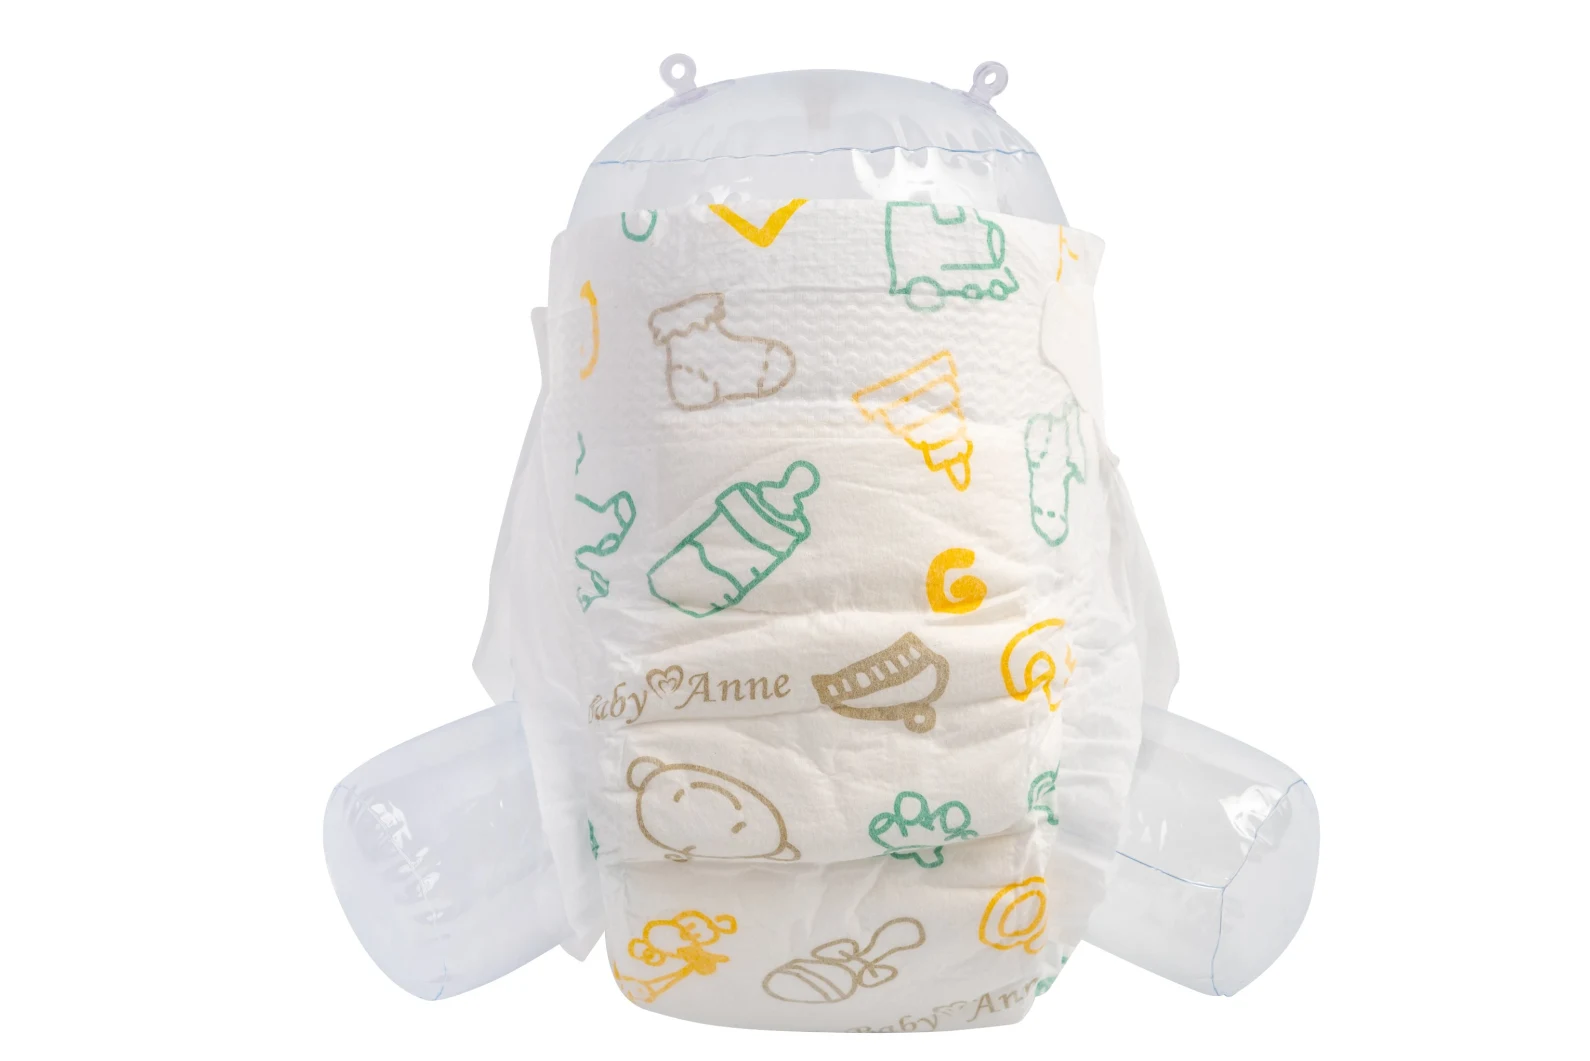 Продукты младенца b Stocklot ранга дешевые высококачественные и мягкая товаров младенца полноразмерная и сонная пеленка младенца UPS тяги с готовым для того чтобы грузить